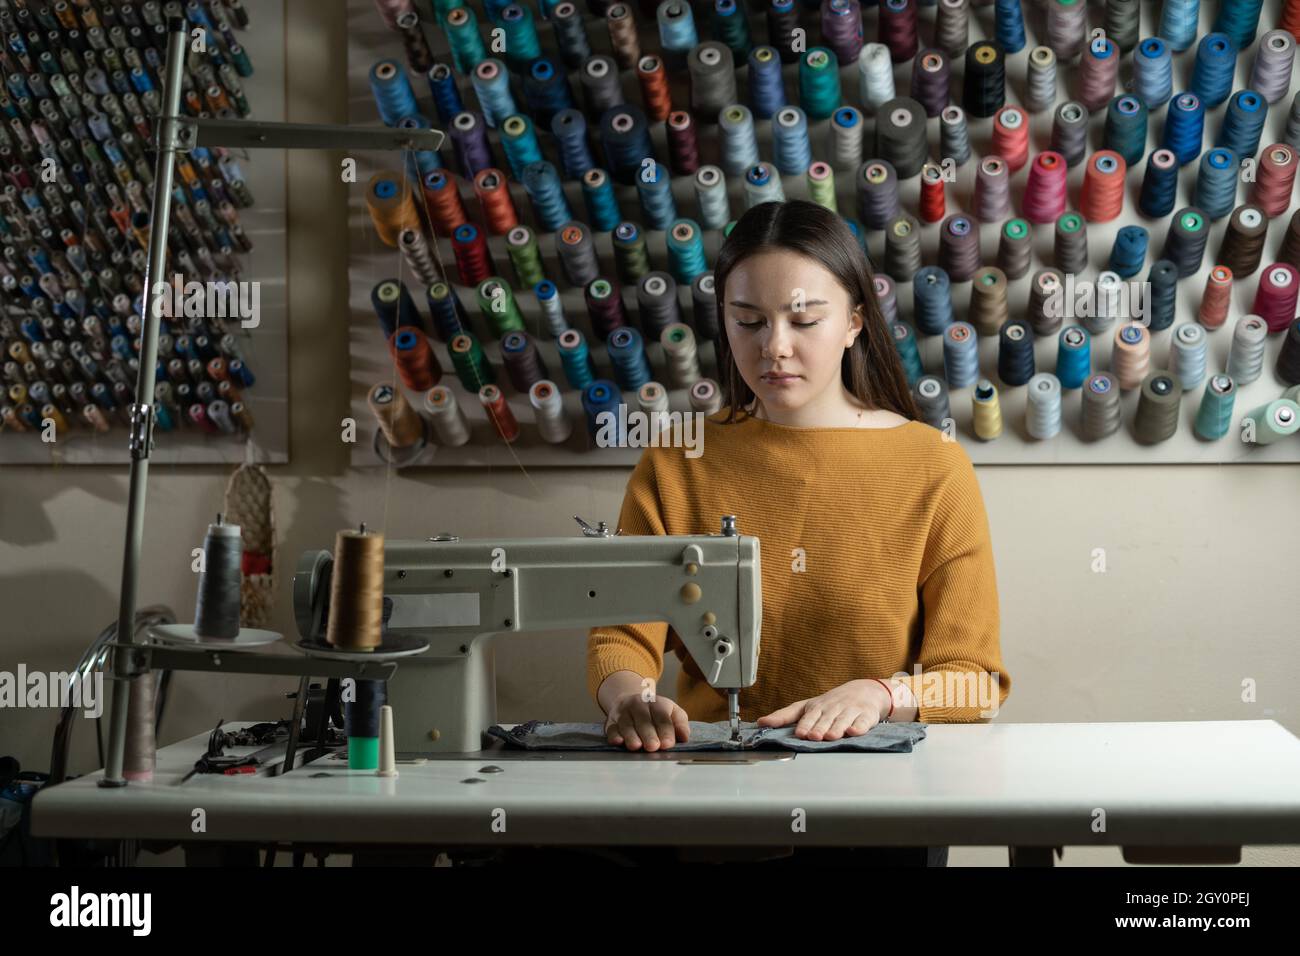 Una mujer trabaja en una máquina de coser en un taller. Ella se sienta en  la mesa y soda ropa de algodón. Fondo de bobinas de hilo de colores  diferentes Fotografía de